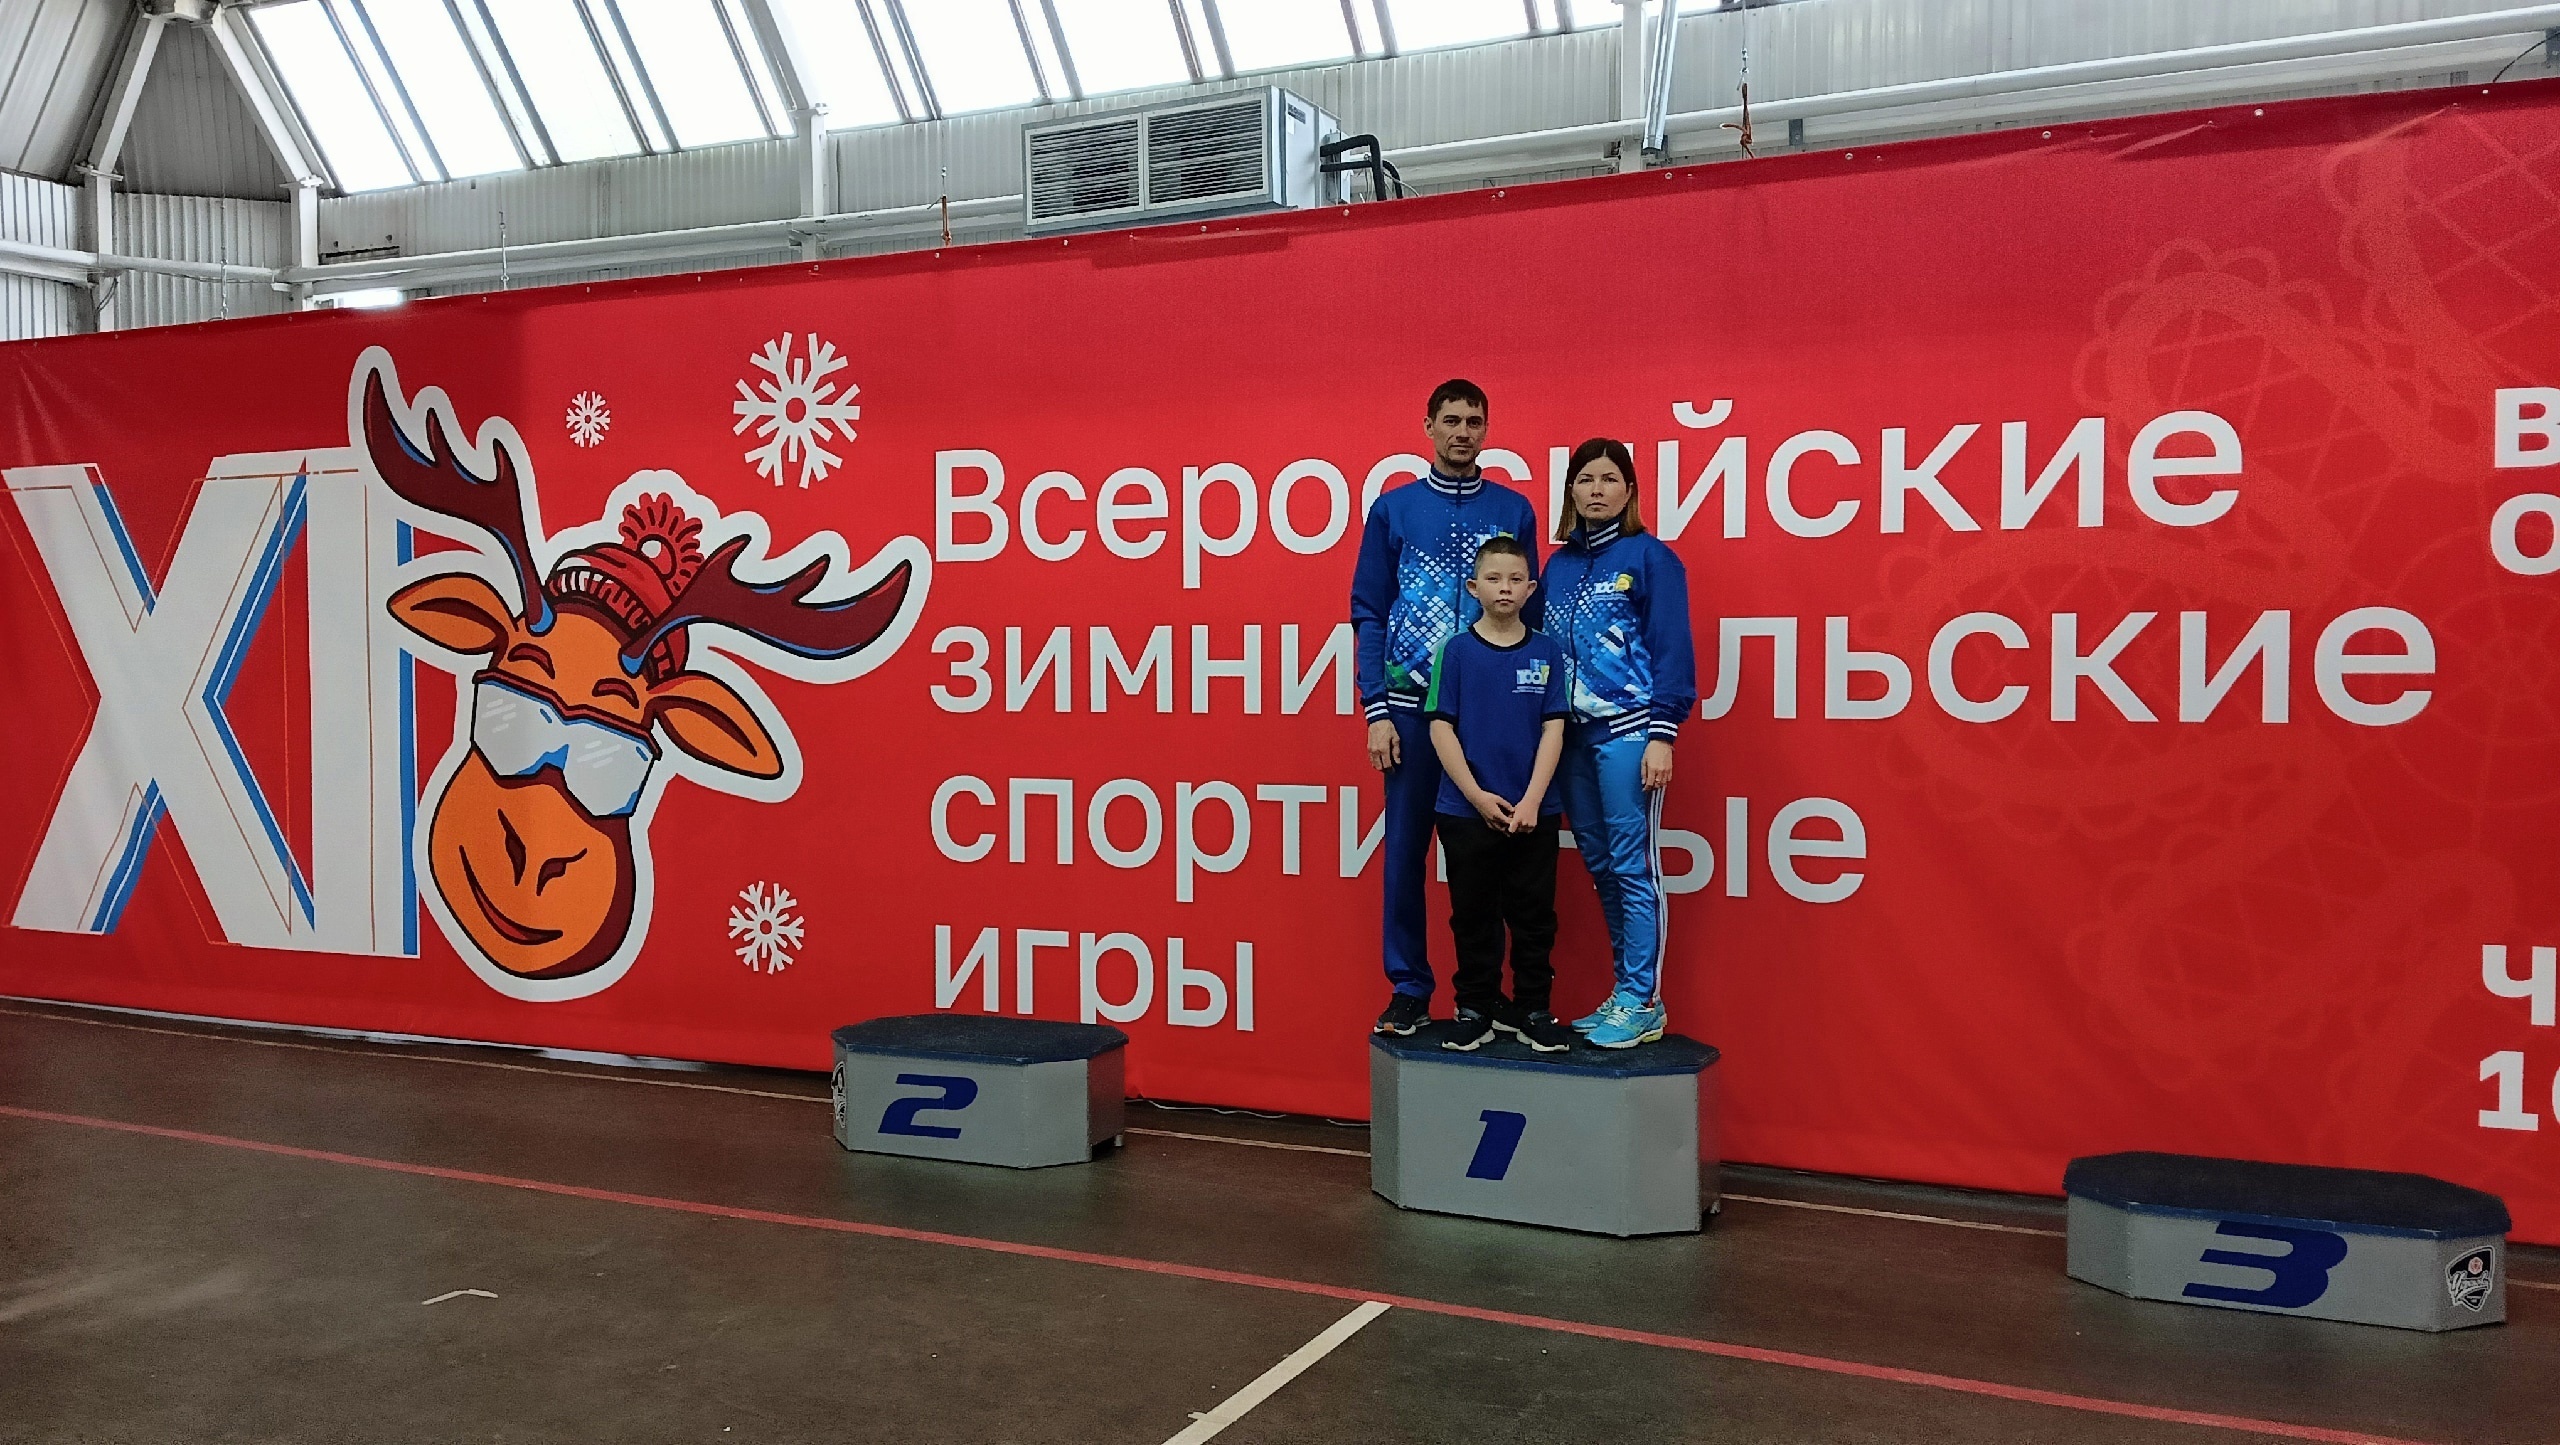 Спортсмены из Башкирии приняли участие в XI Всероссийских зимних сельских спортивных играх